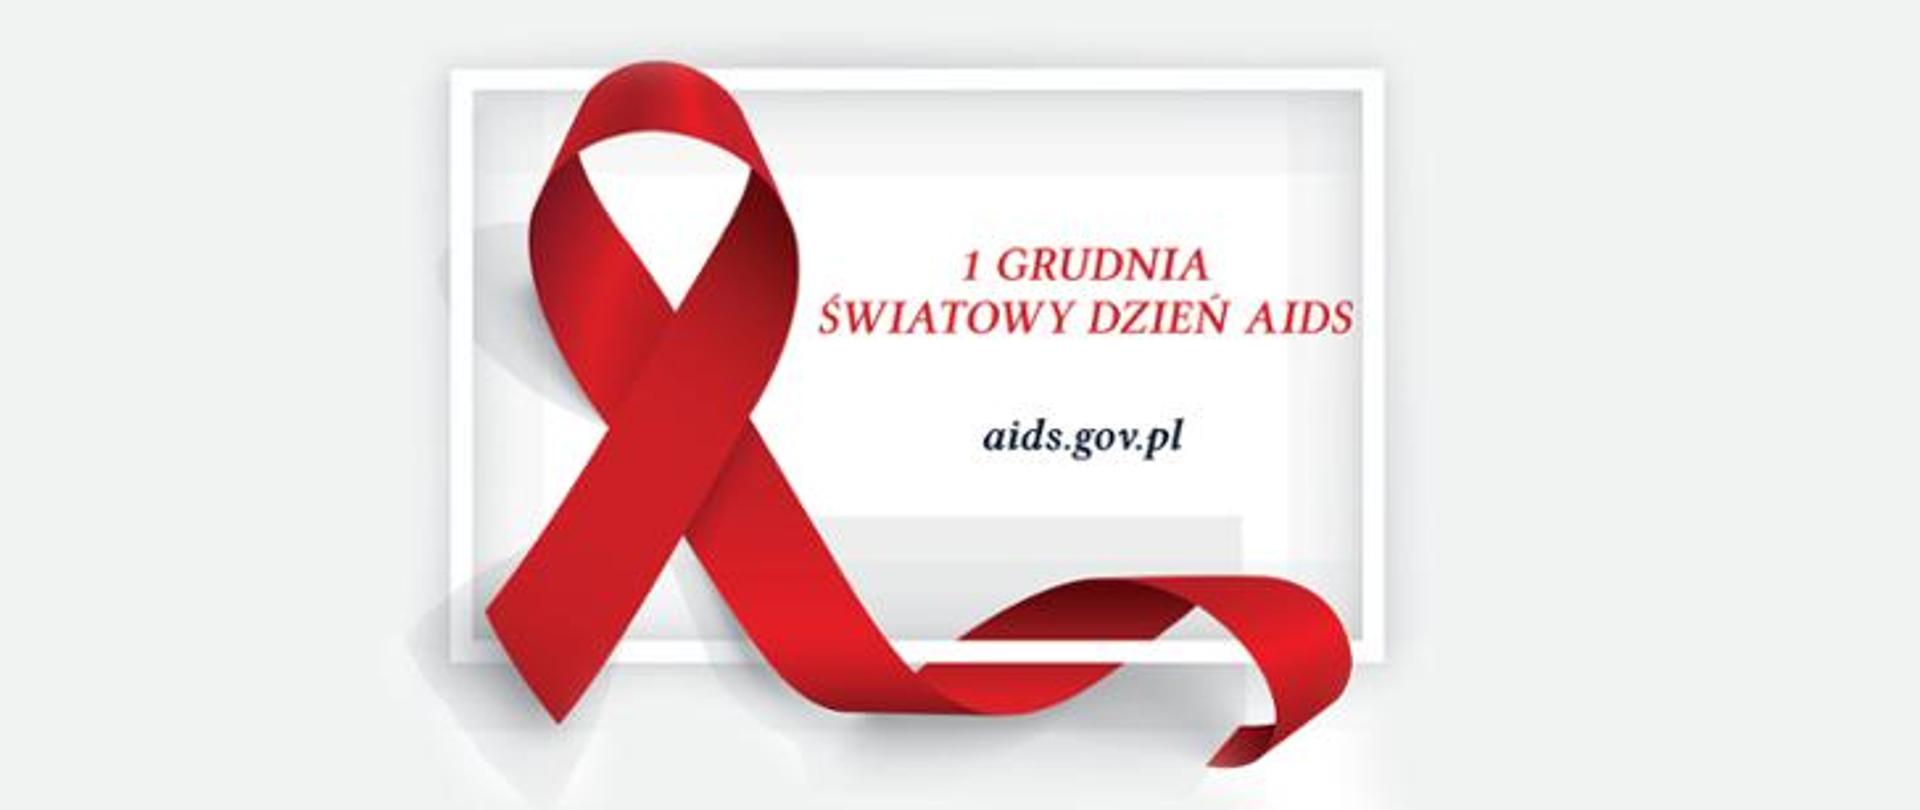 Czerwona kokardka, 1 Grudnia Światowy Dzień AIDS